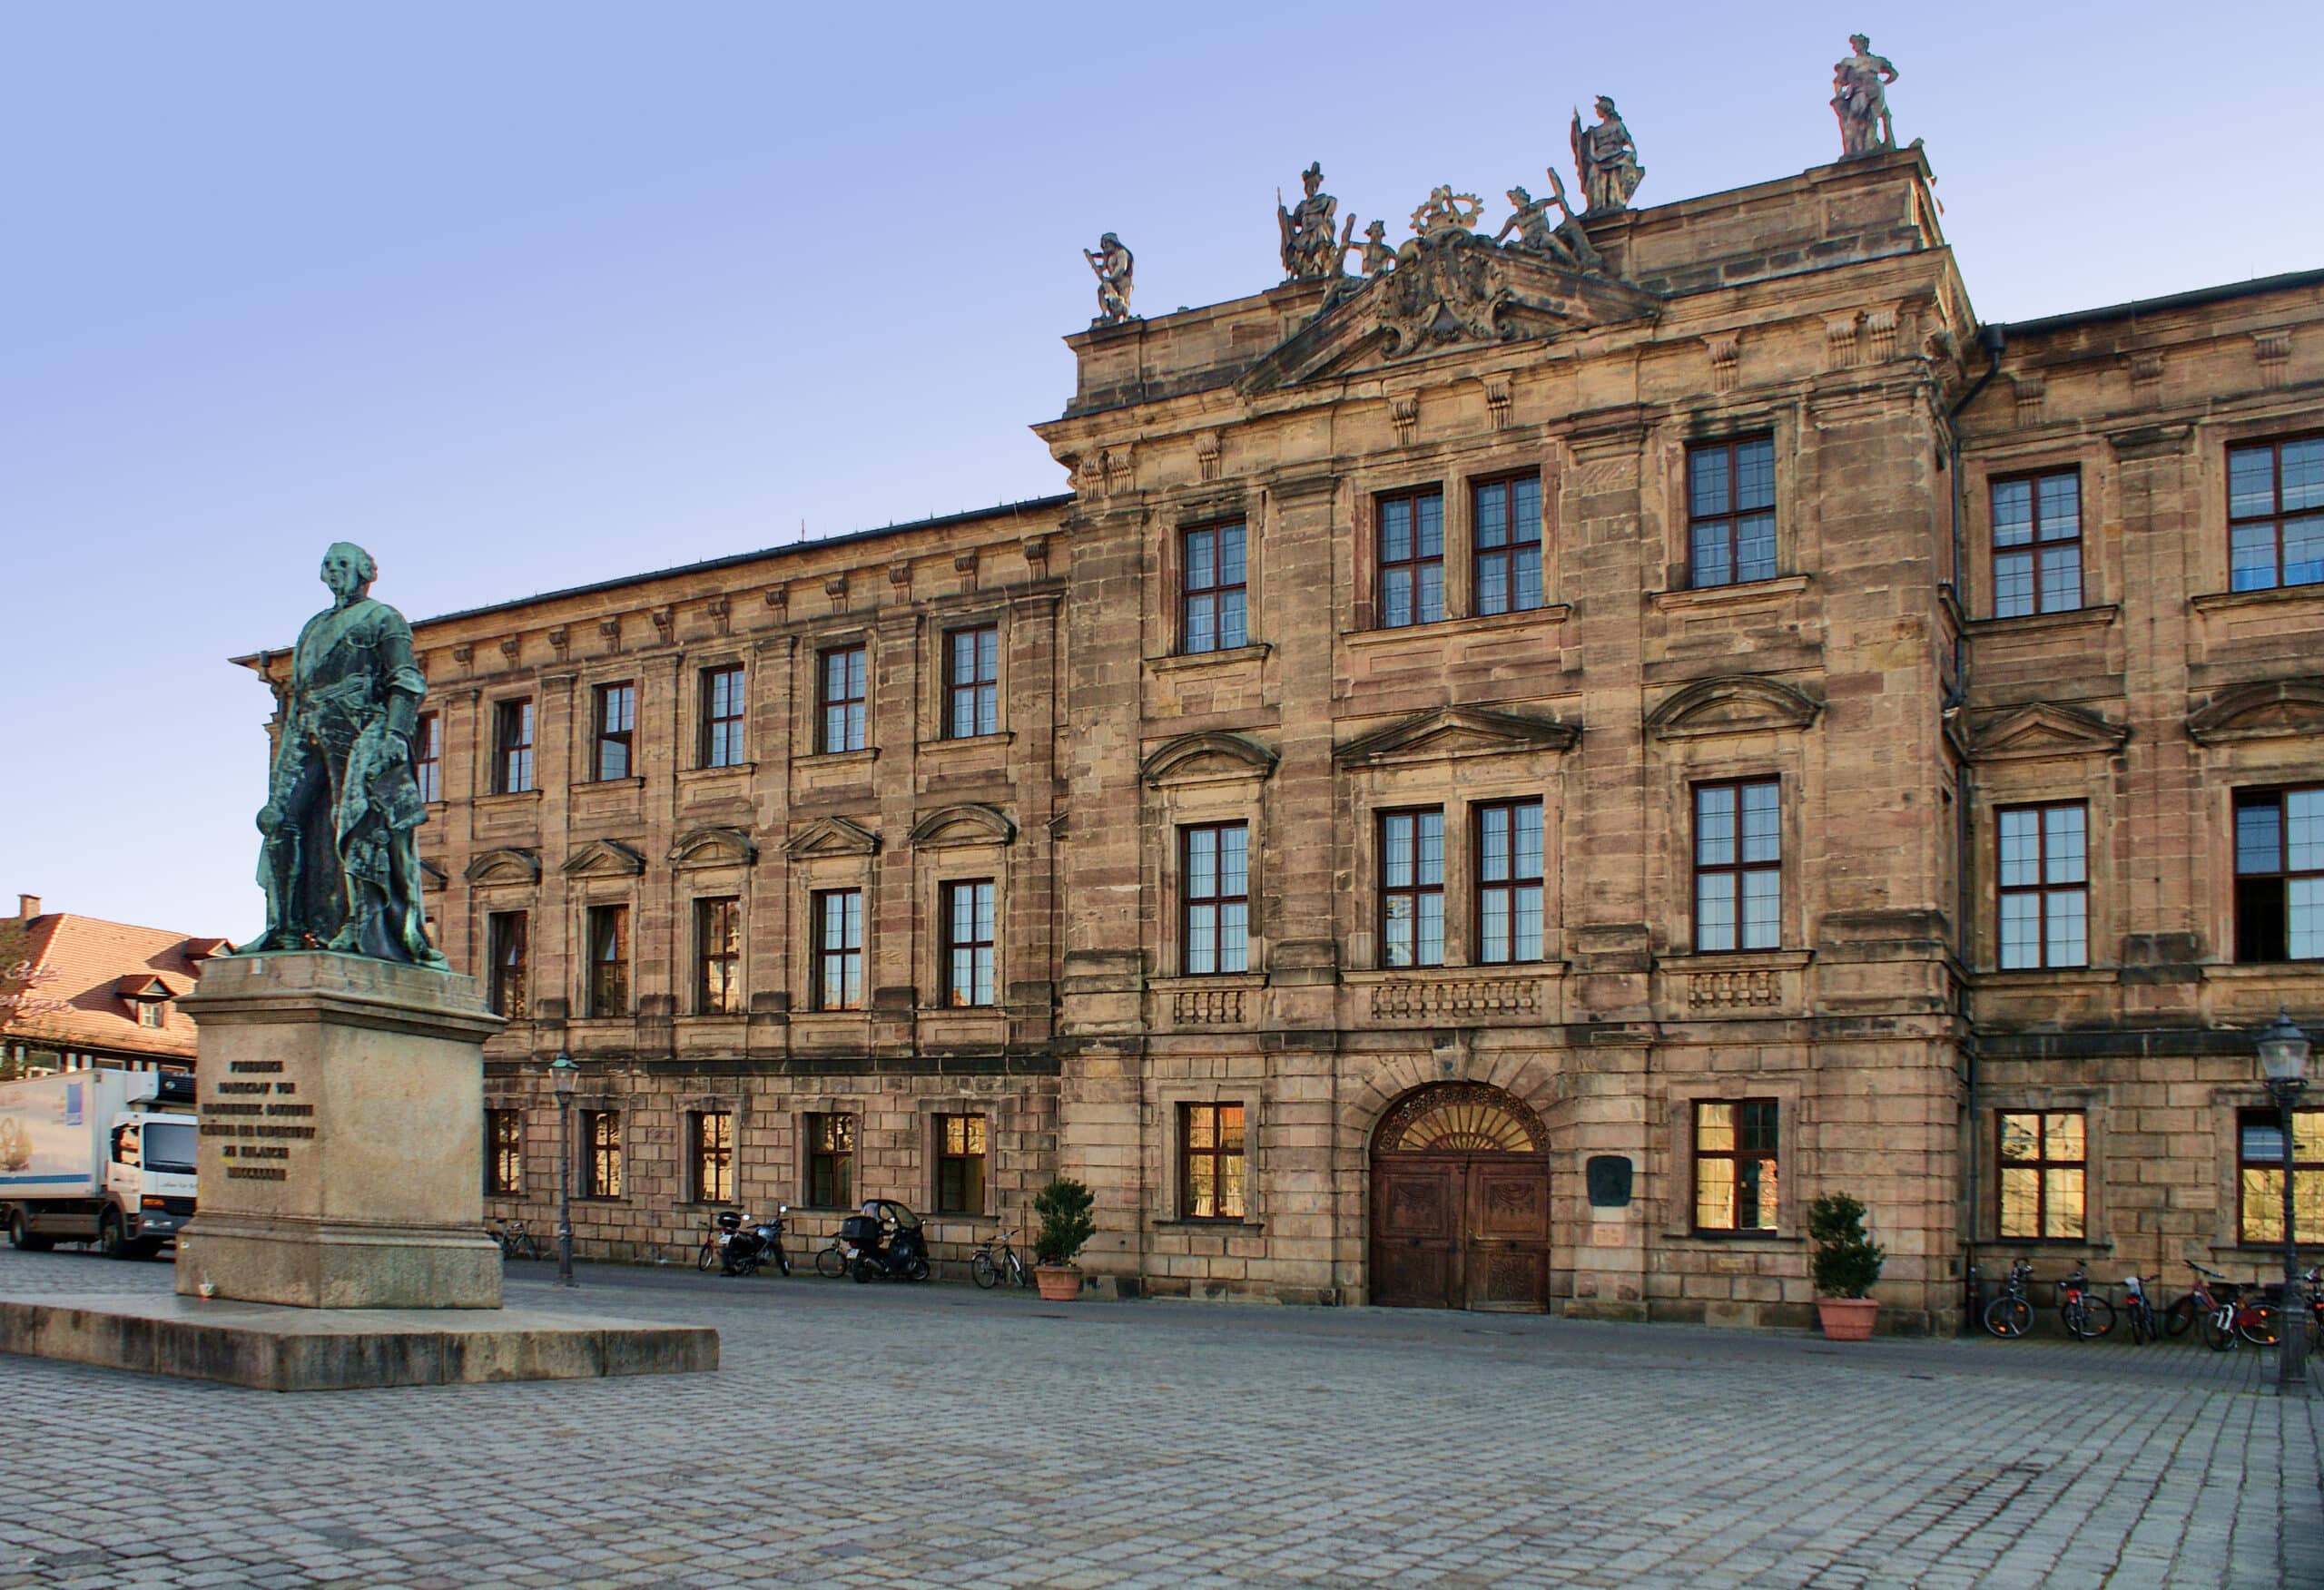 University of Erlangen Nuremberg